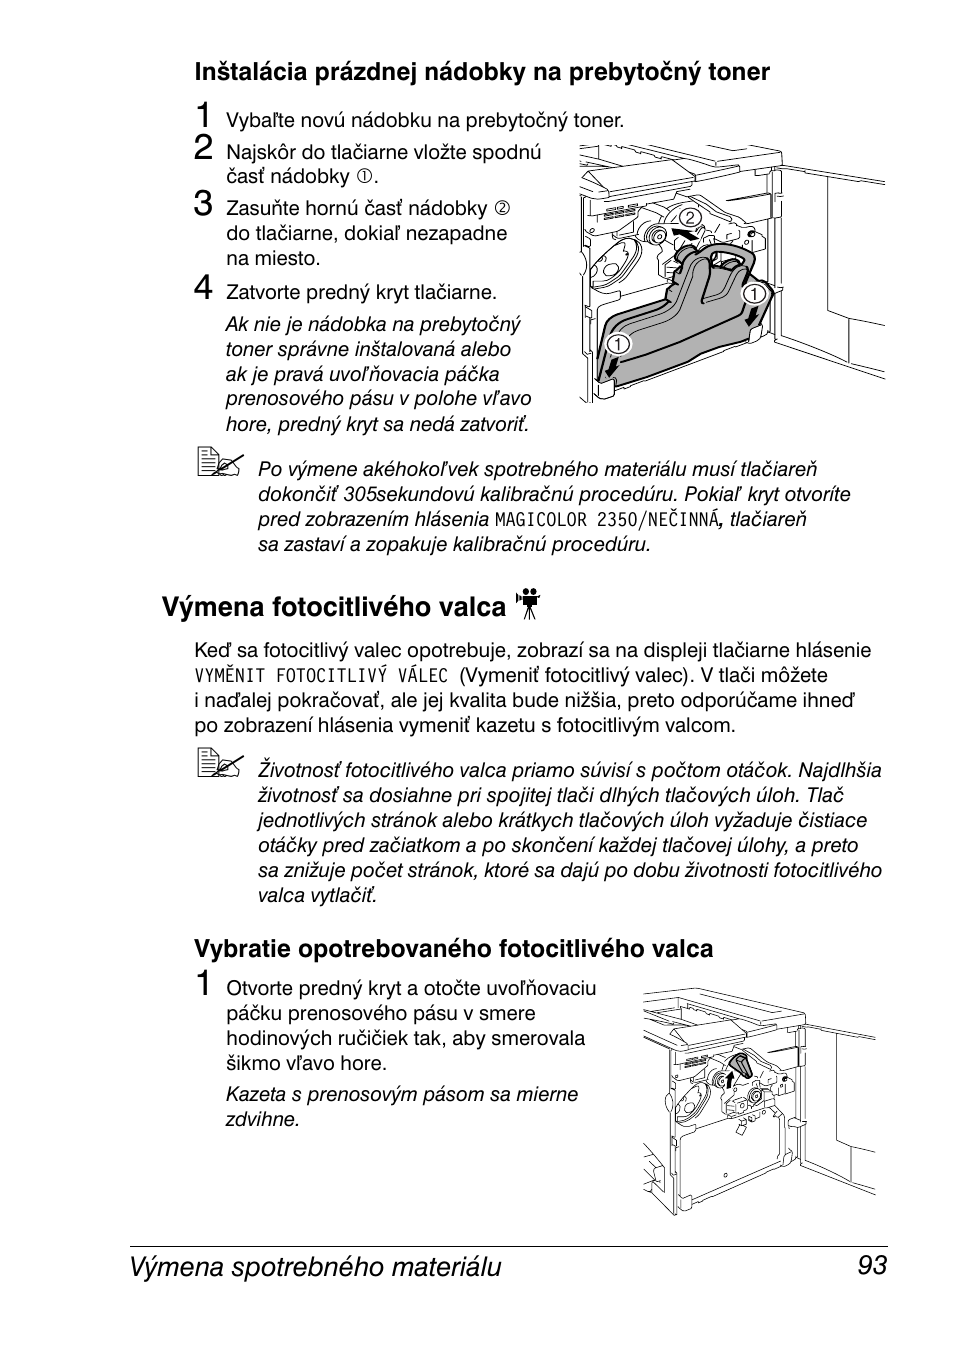 Inštalácia prázdnej nádobky na prebytočný toner, Výmena fotocitlivého  valca, Vybratie opotrebovaného fotocitlivého valca | Konica Minolta  Magicolor 2350EN User Manual | Page 95 / 208